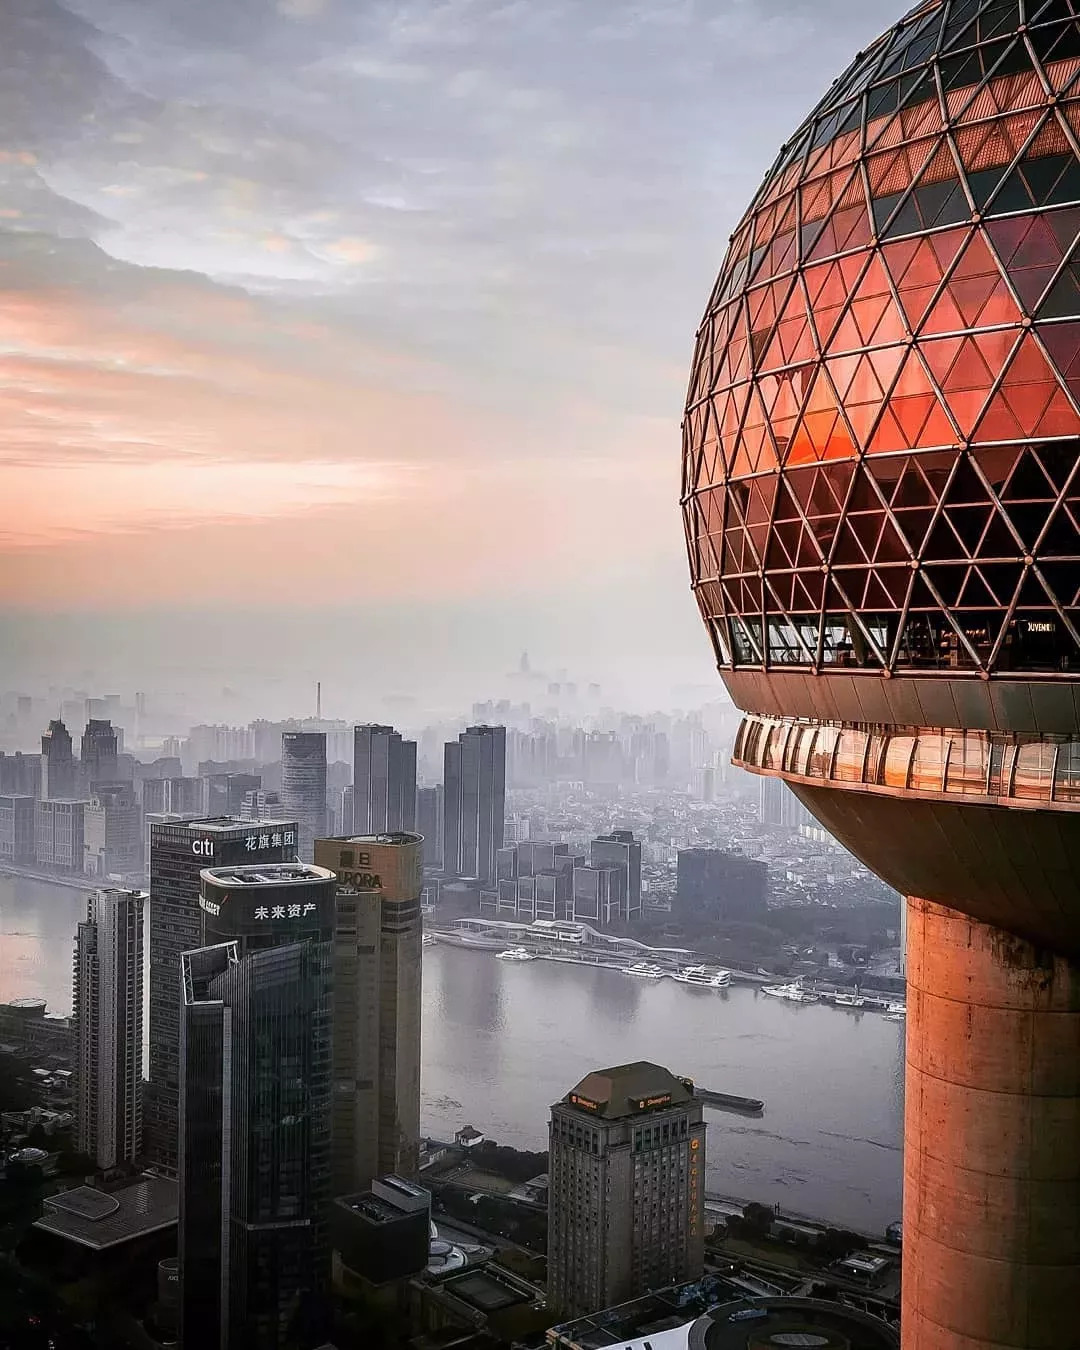 德国摄影师航拍的上海在INS爆红,网友大赞:这